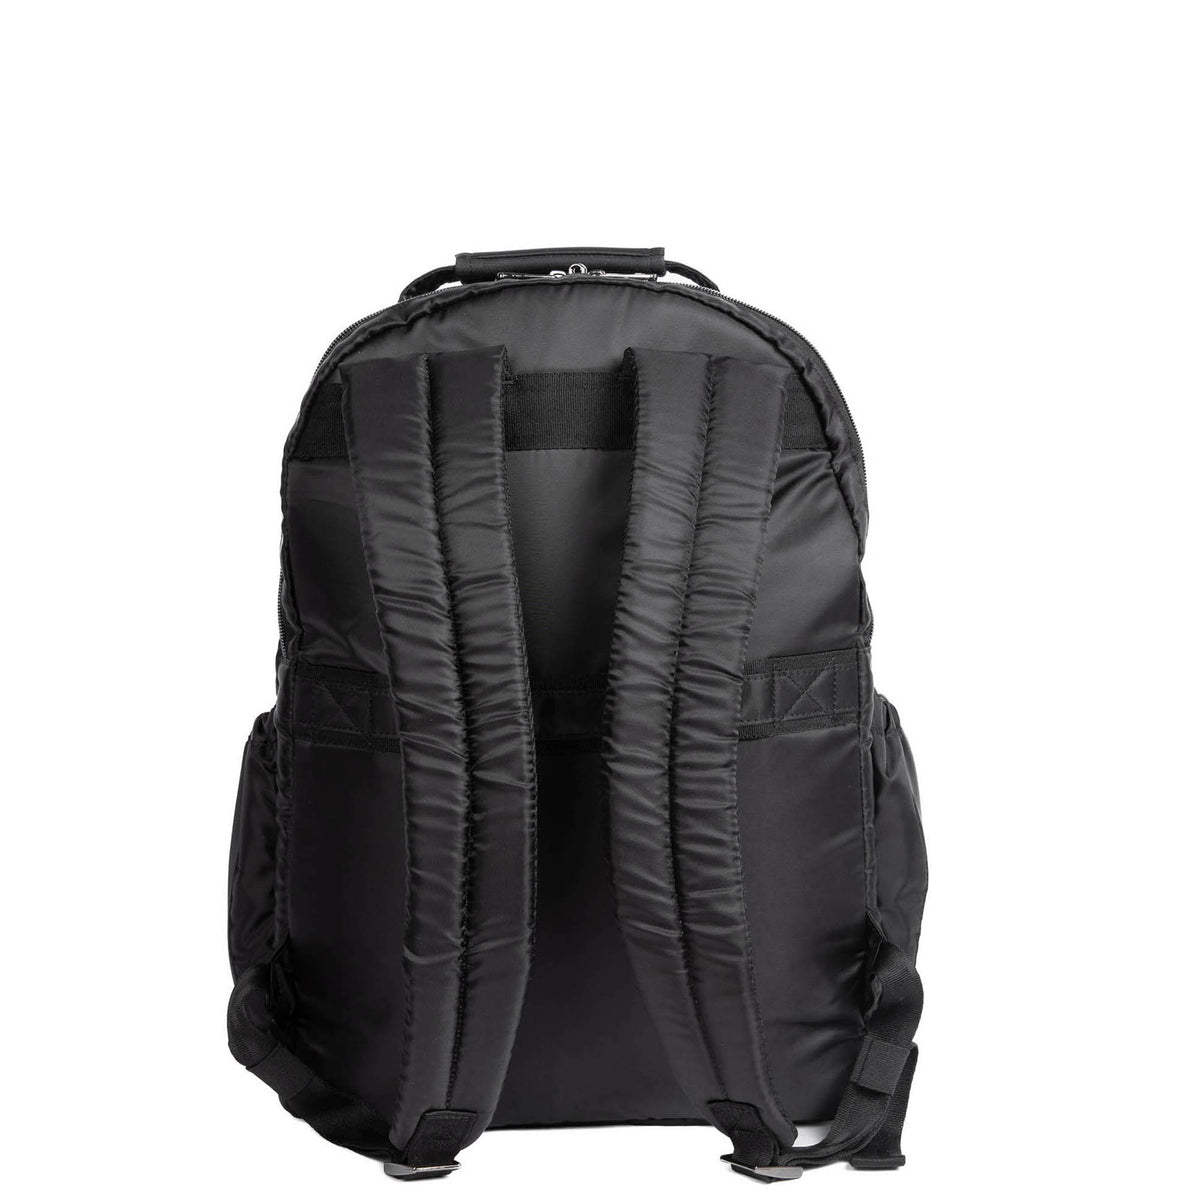 Puddle Jumper SE Backpack